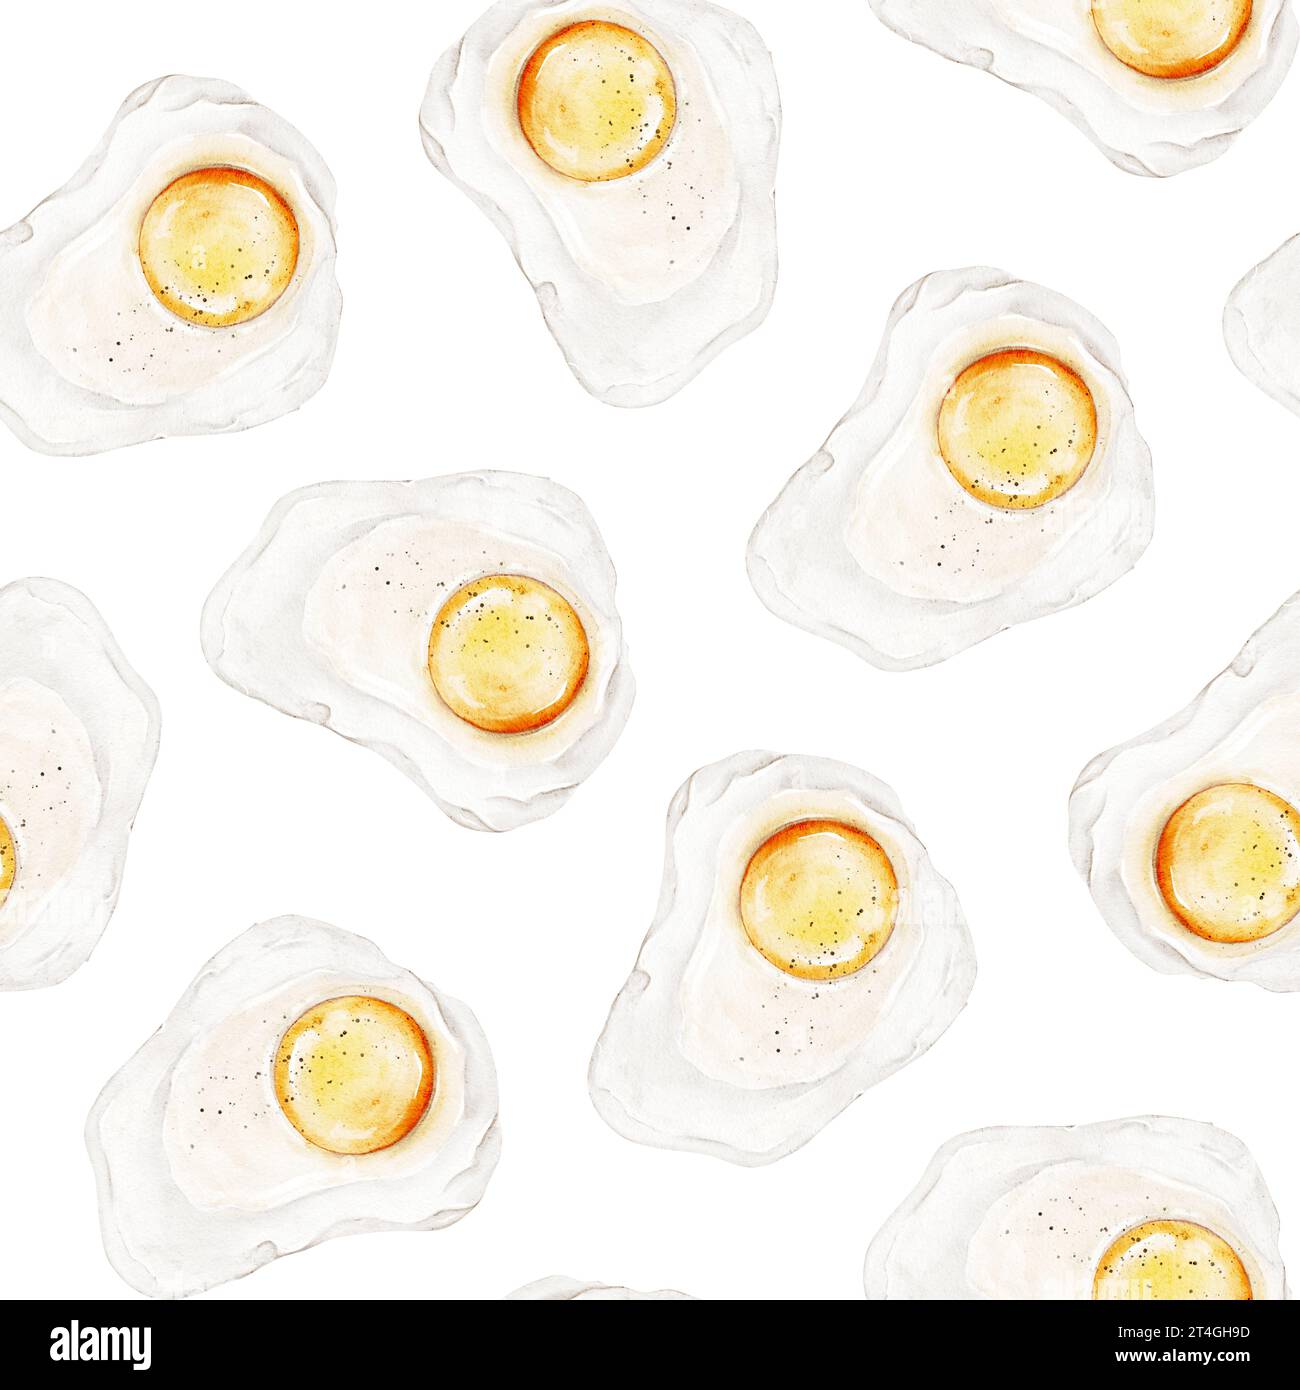 Aquarelle modèle sans couture avec des œufs au plat pour le petit déjeuner sur fond blanc. Parfait pour le menu, livre de cuisine, emballage, enseigne, marché, affiches, maison Banque D'Images